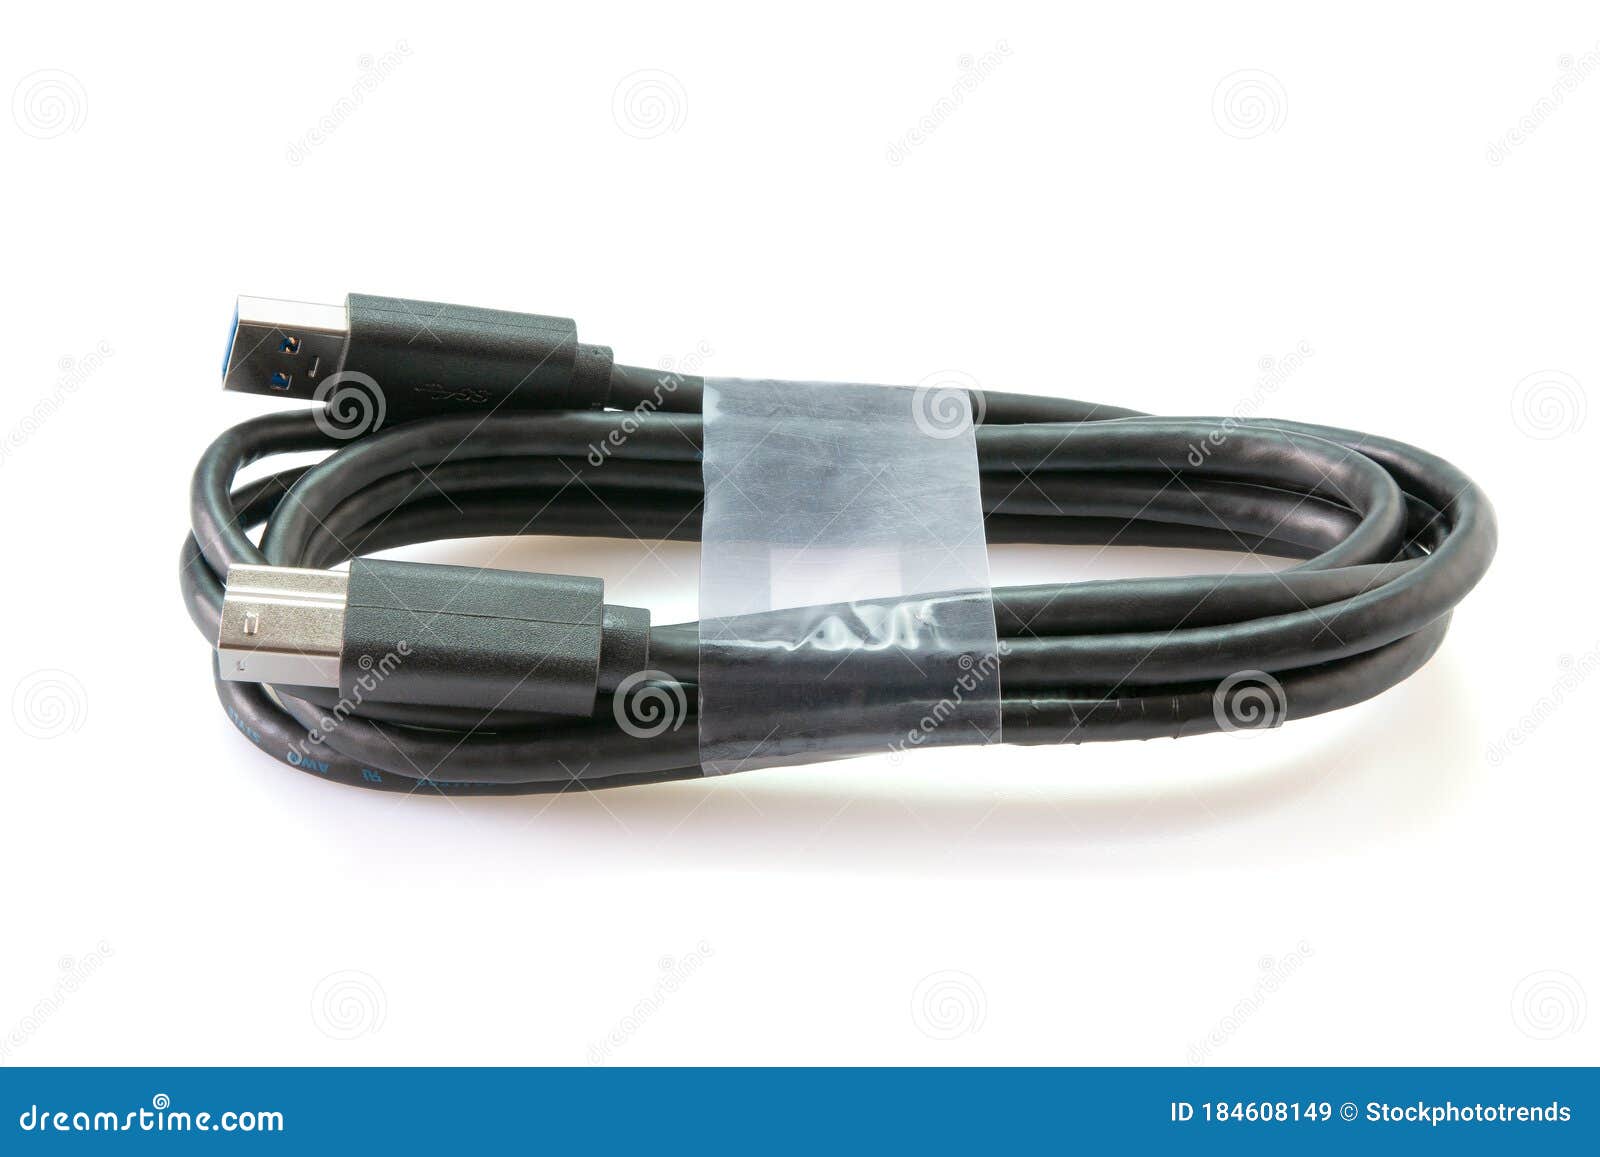 Ansættelse Fritagelse adgang USB 3.0 Upstream Cable 6 Ft Stock Image - Image of external, computer:  184608149